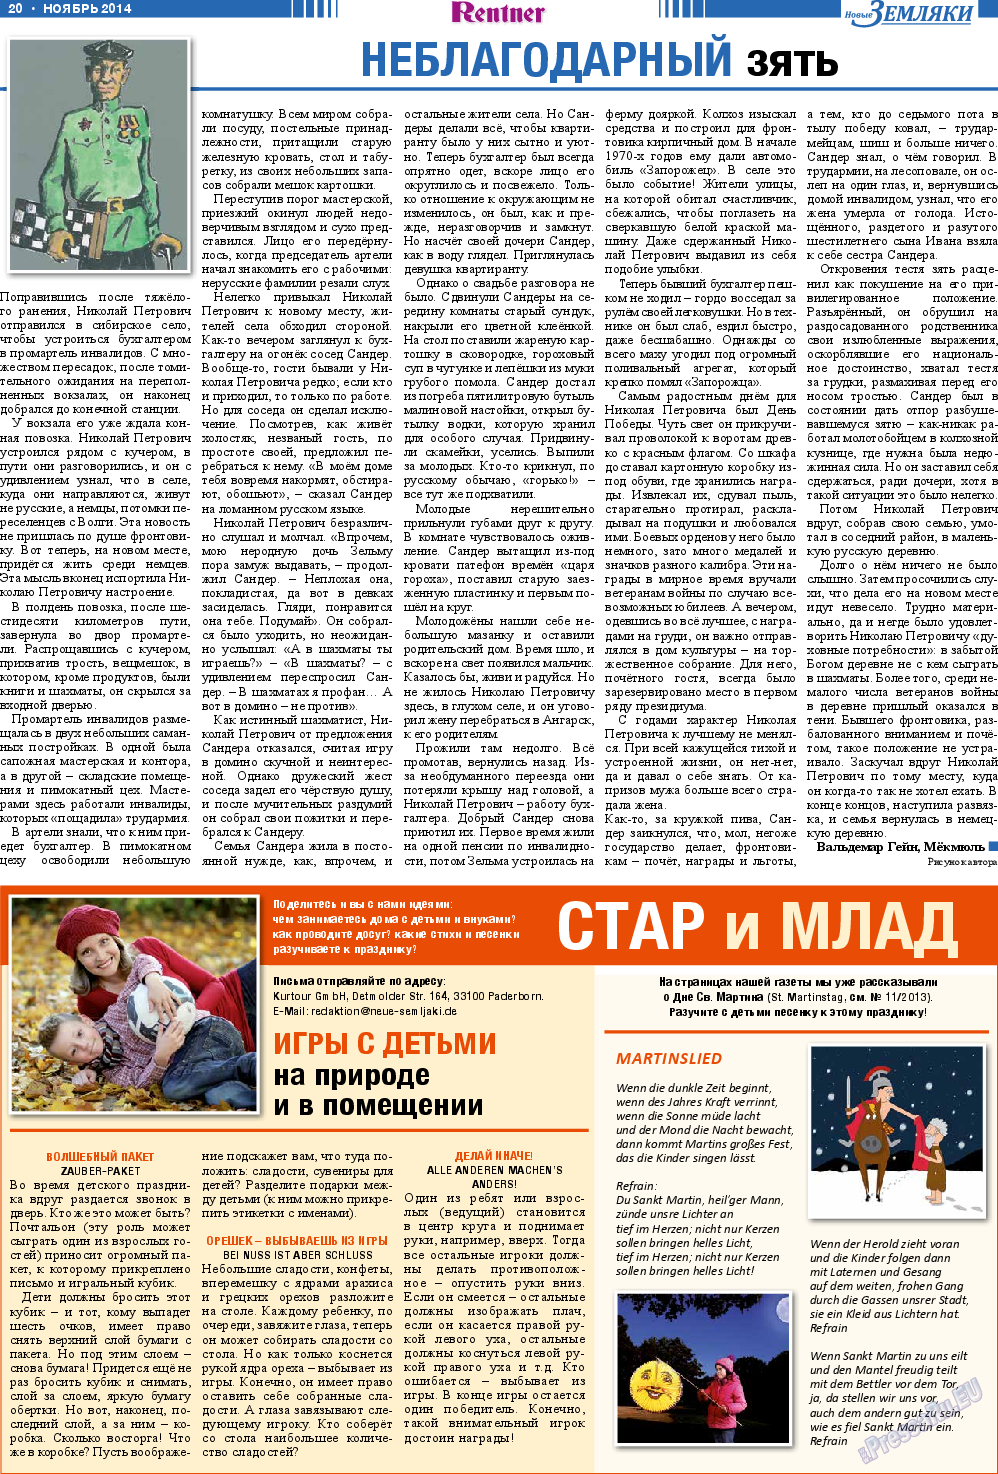 Новые Земляки, газета. 2014 №11 стр.20